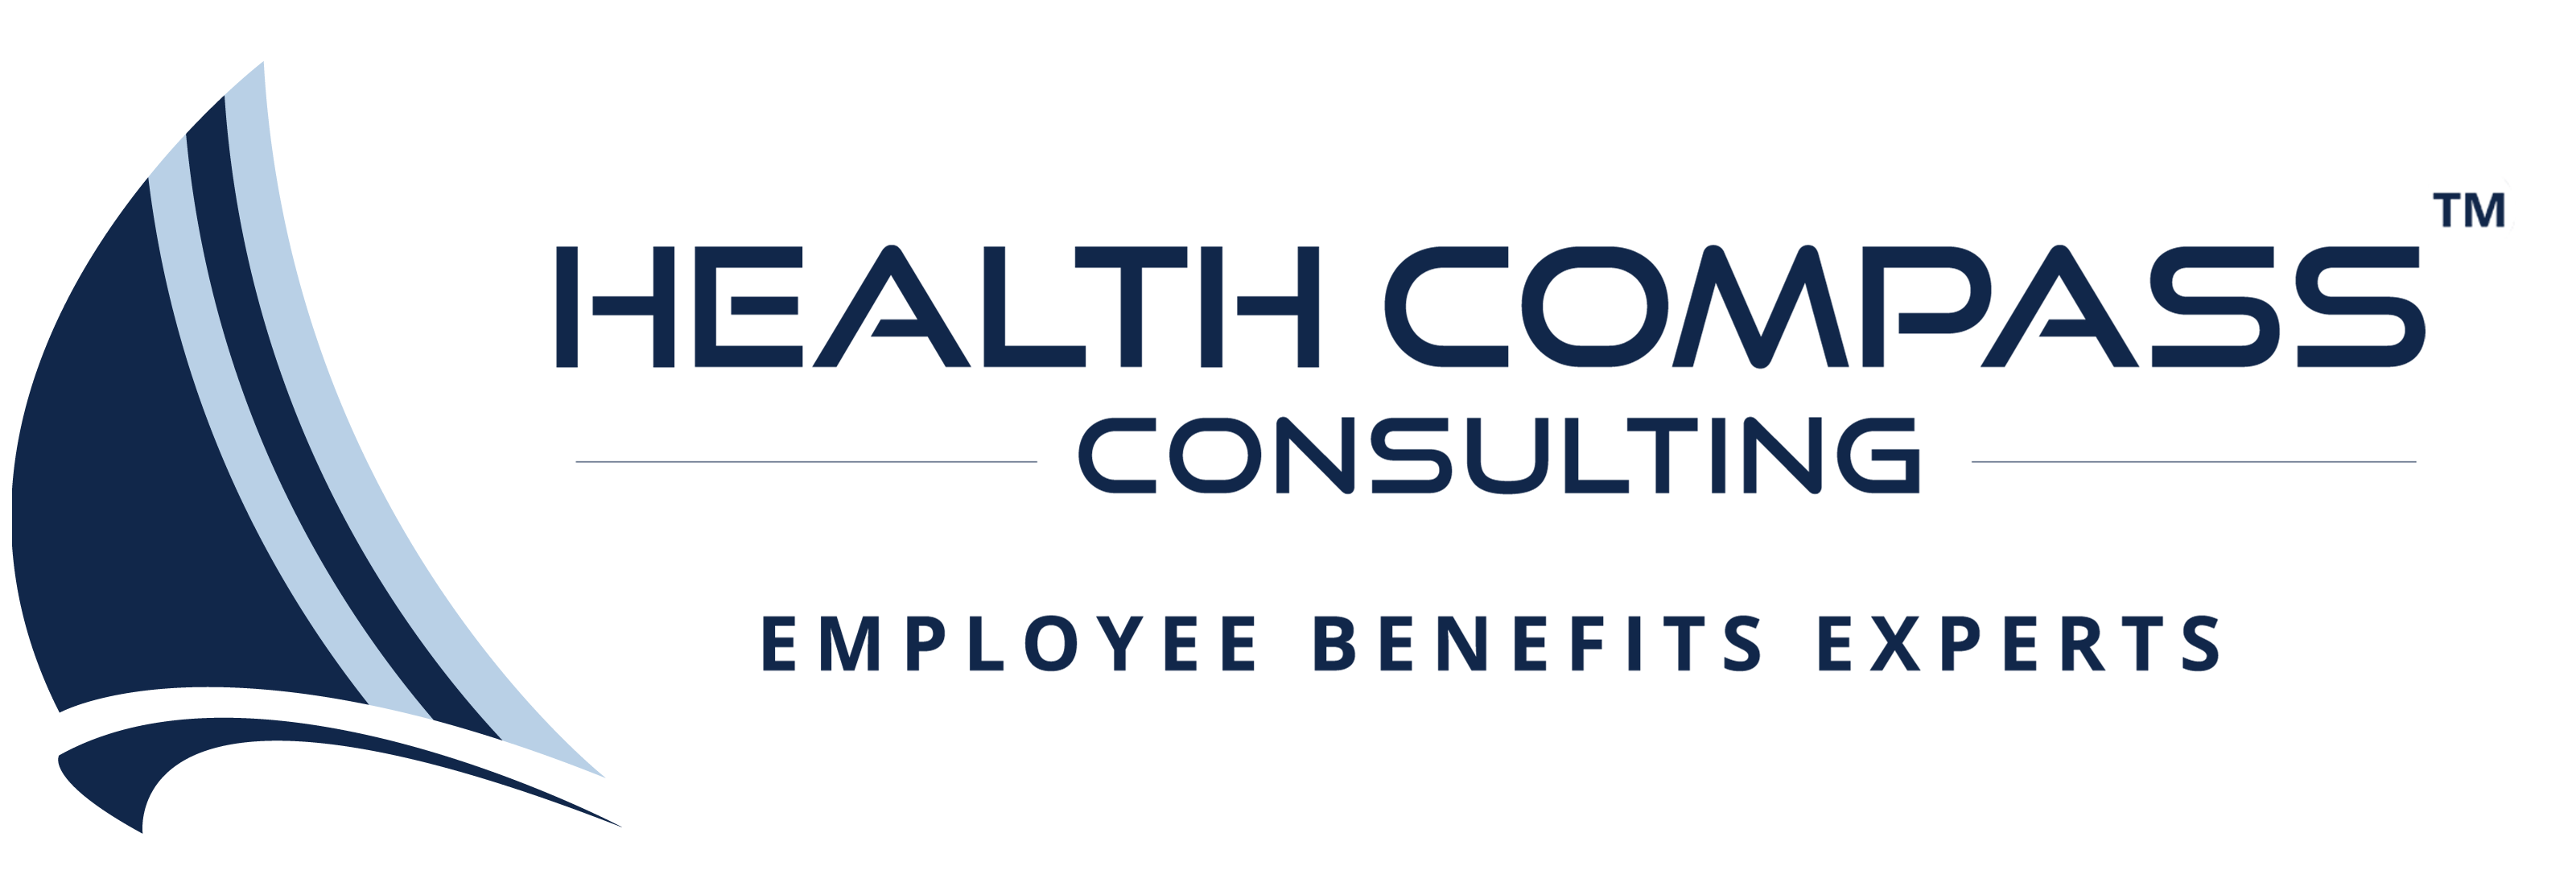 Health Compas logo2 51